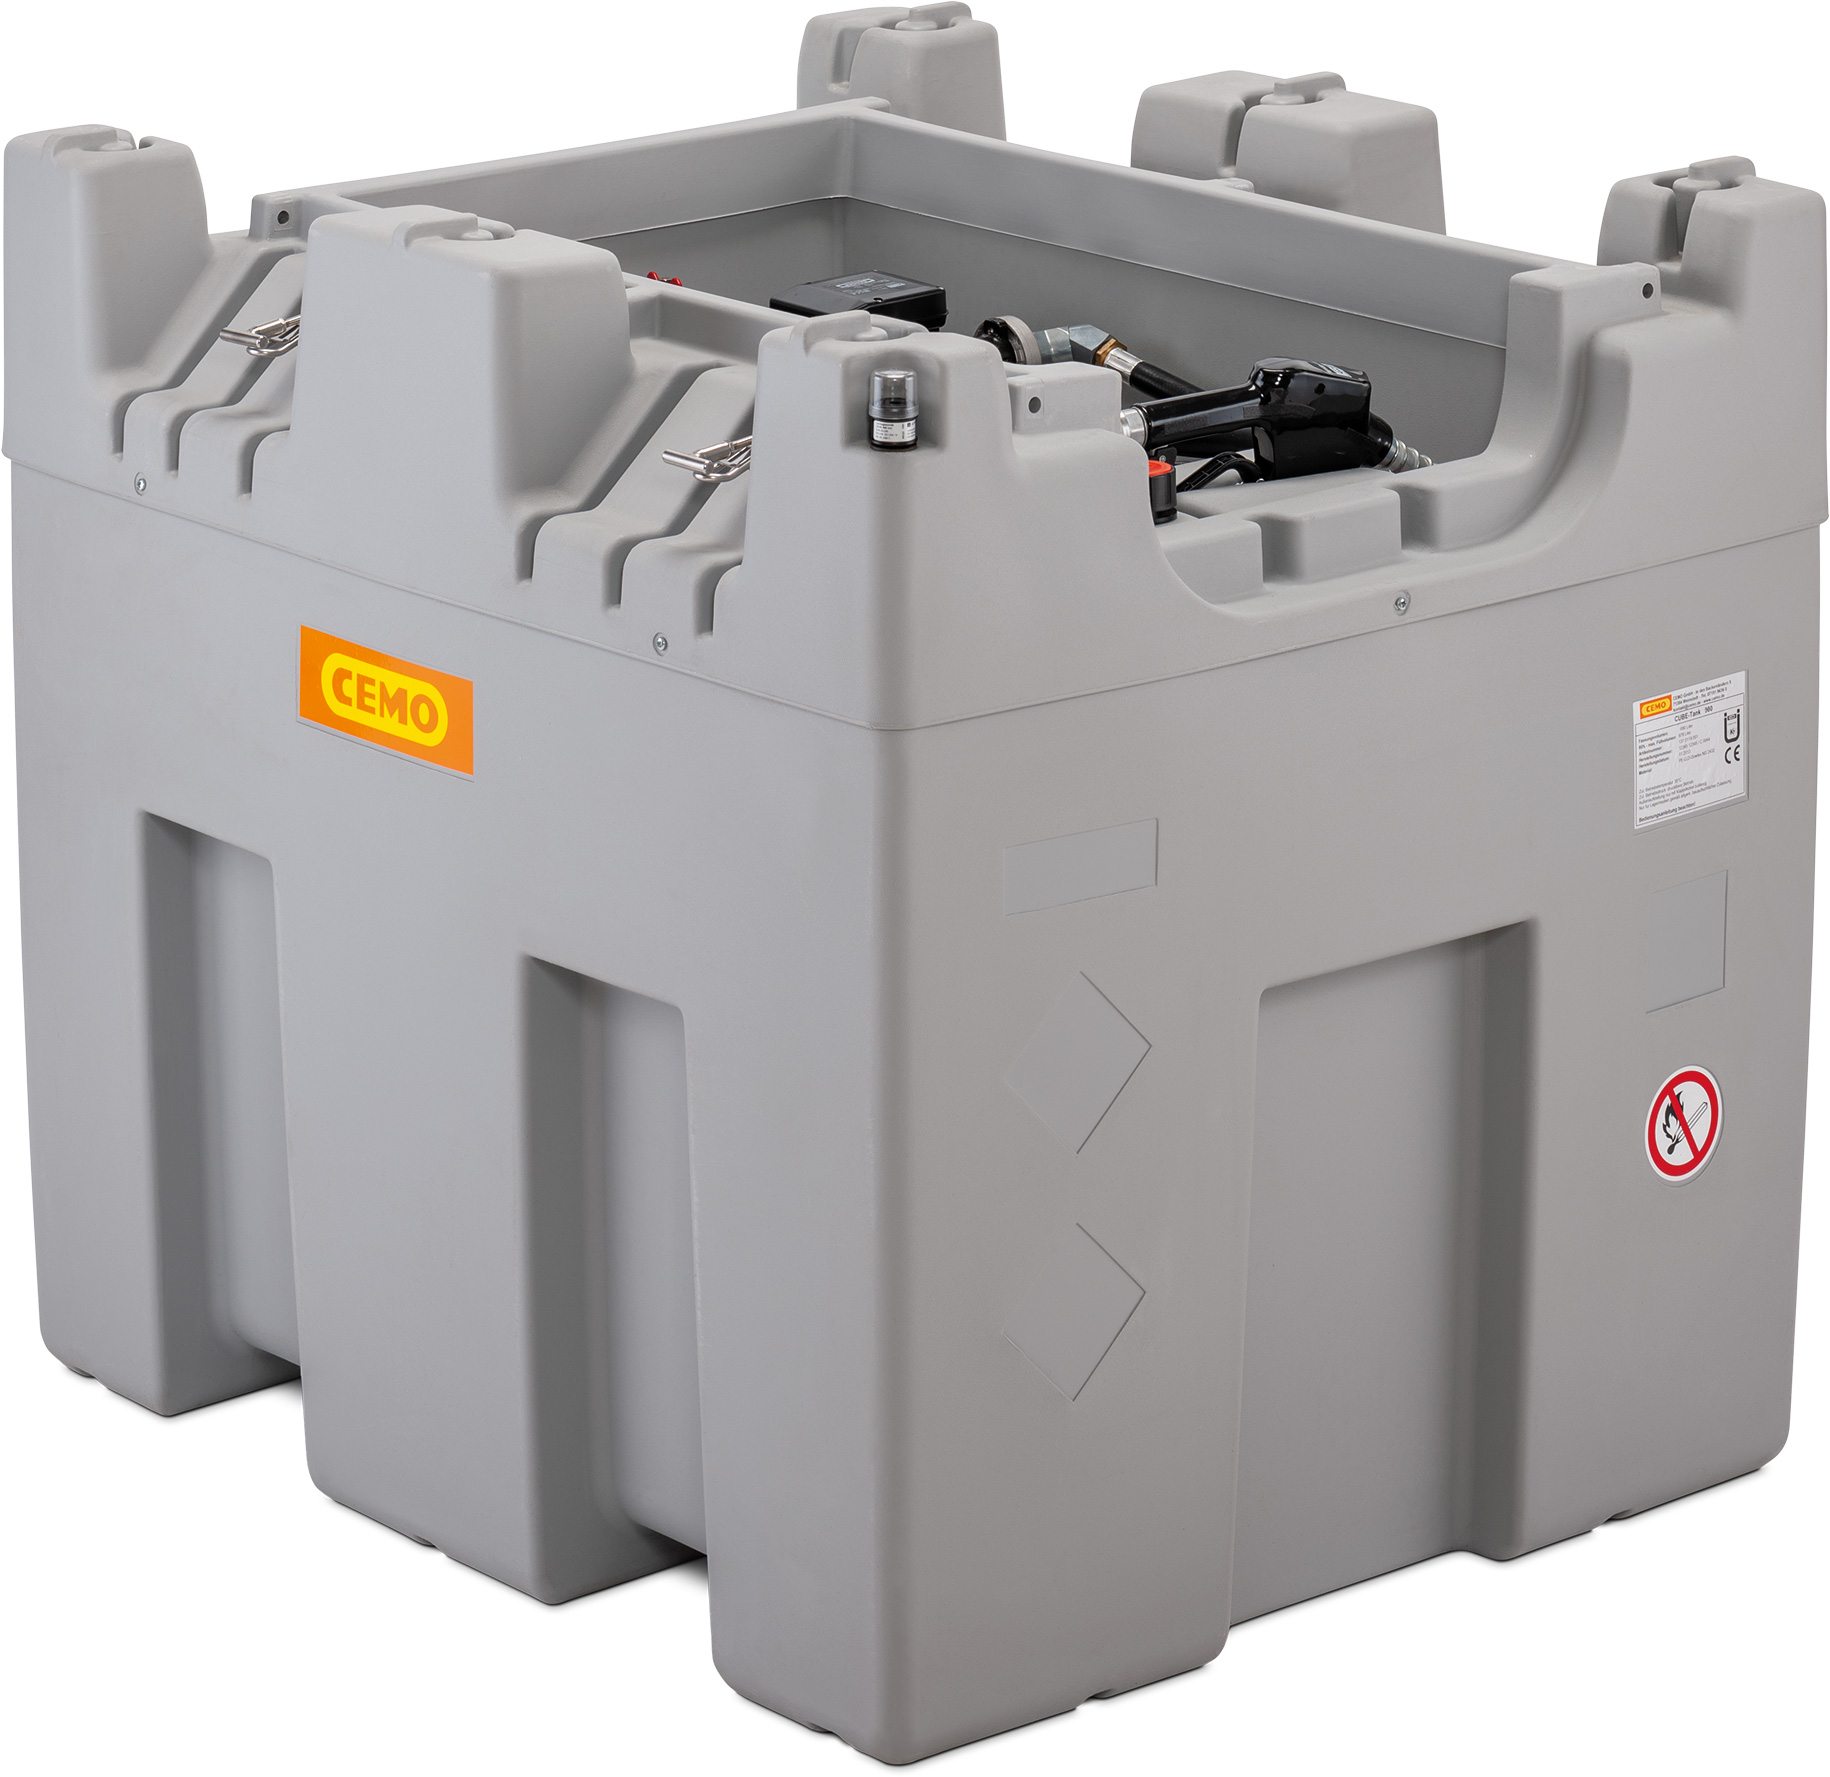 Cemo Dieseltankanlage CUBE 980 Liter stationär – Premium Indoor 11630